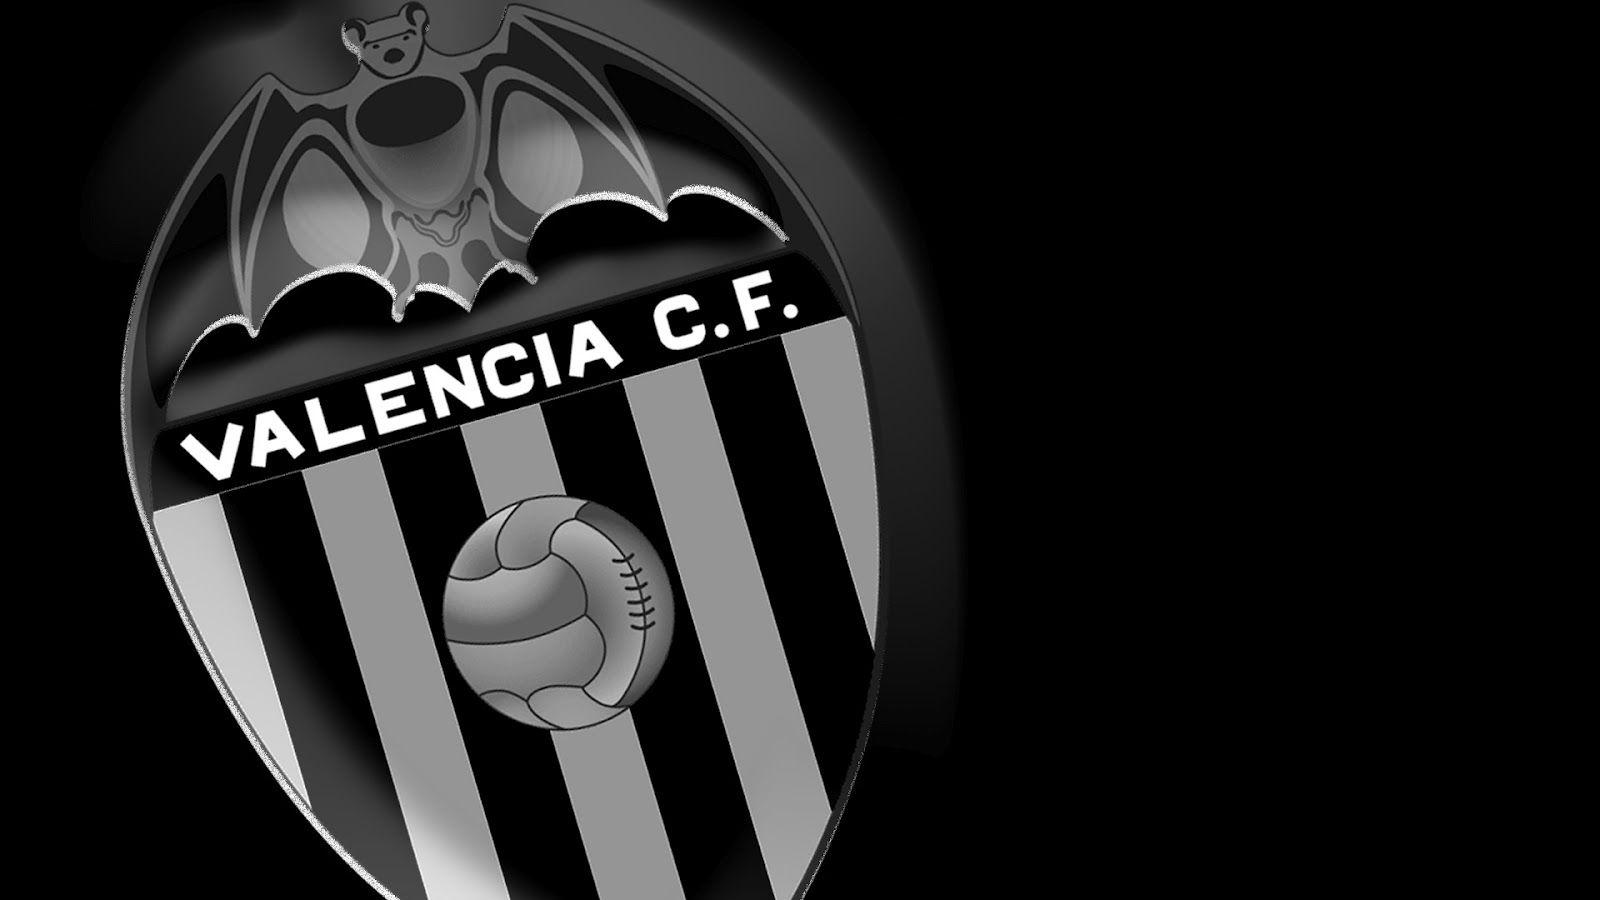 Valencia CF. pics. Valencia and Football team